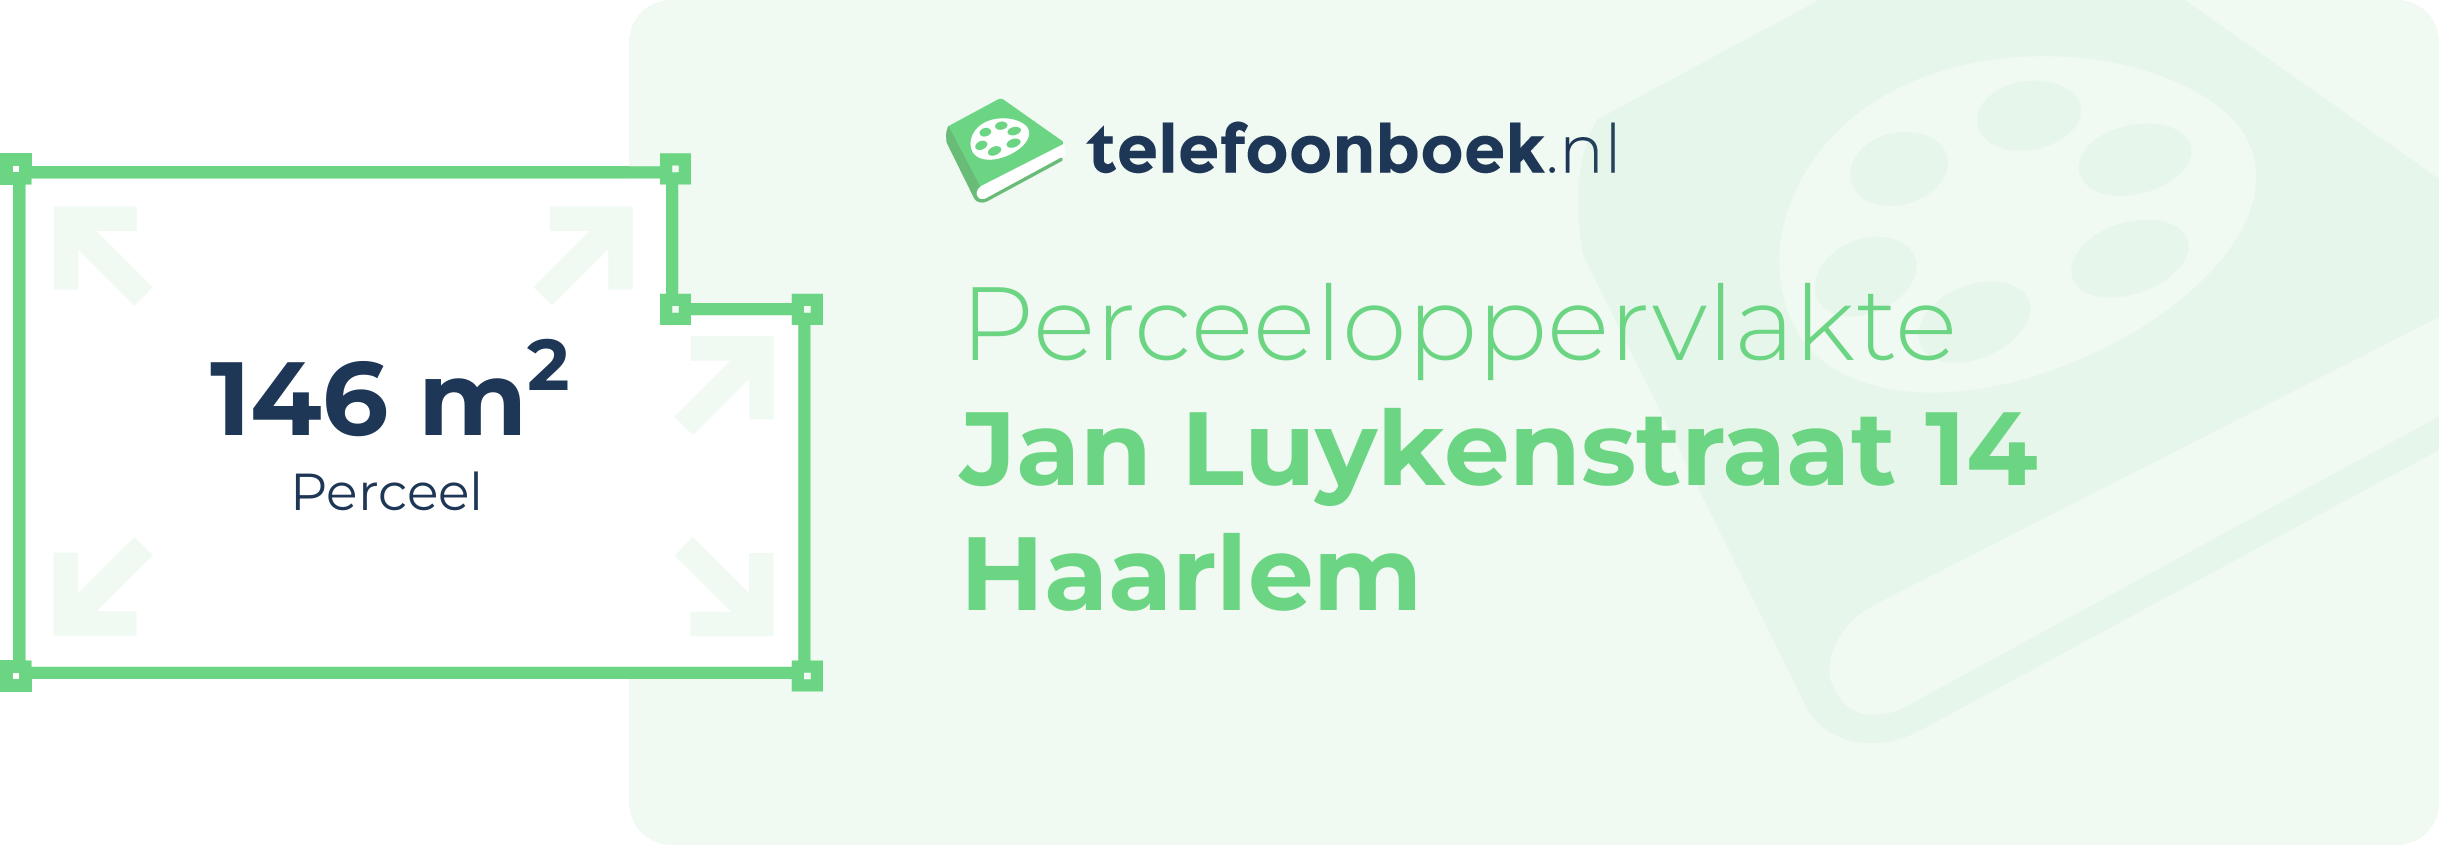 Perceeloppervlakte Jan Luykenstraat 14 Haarlem